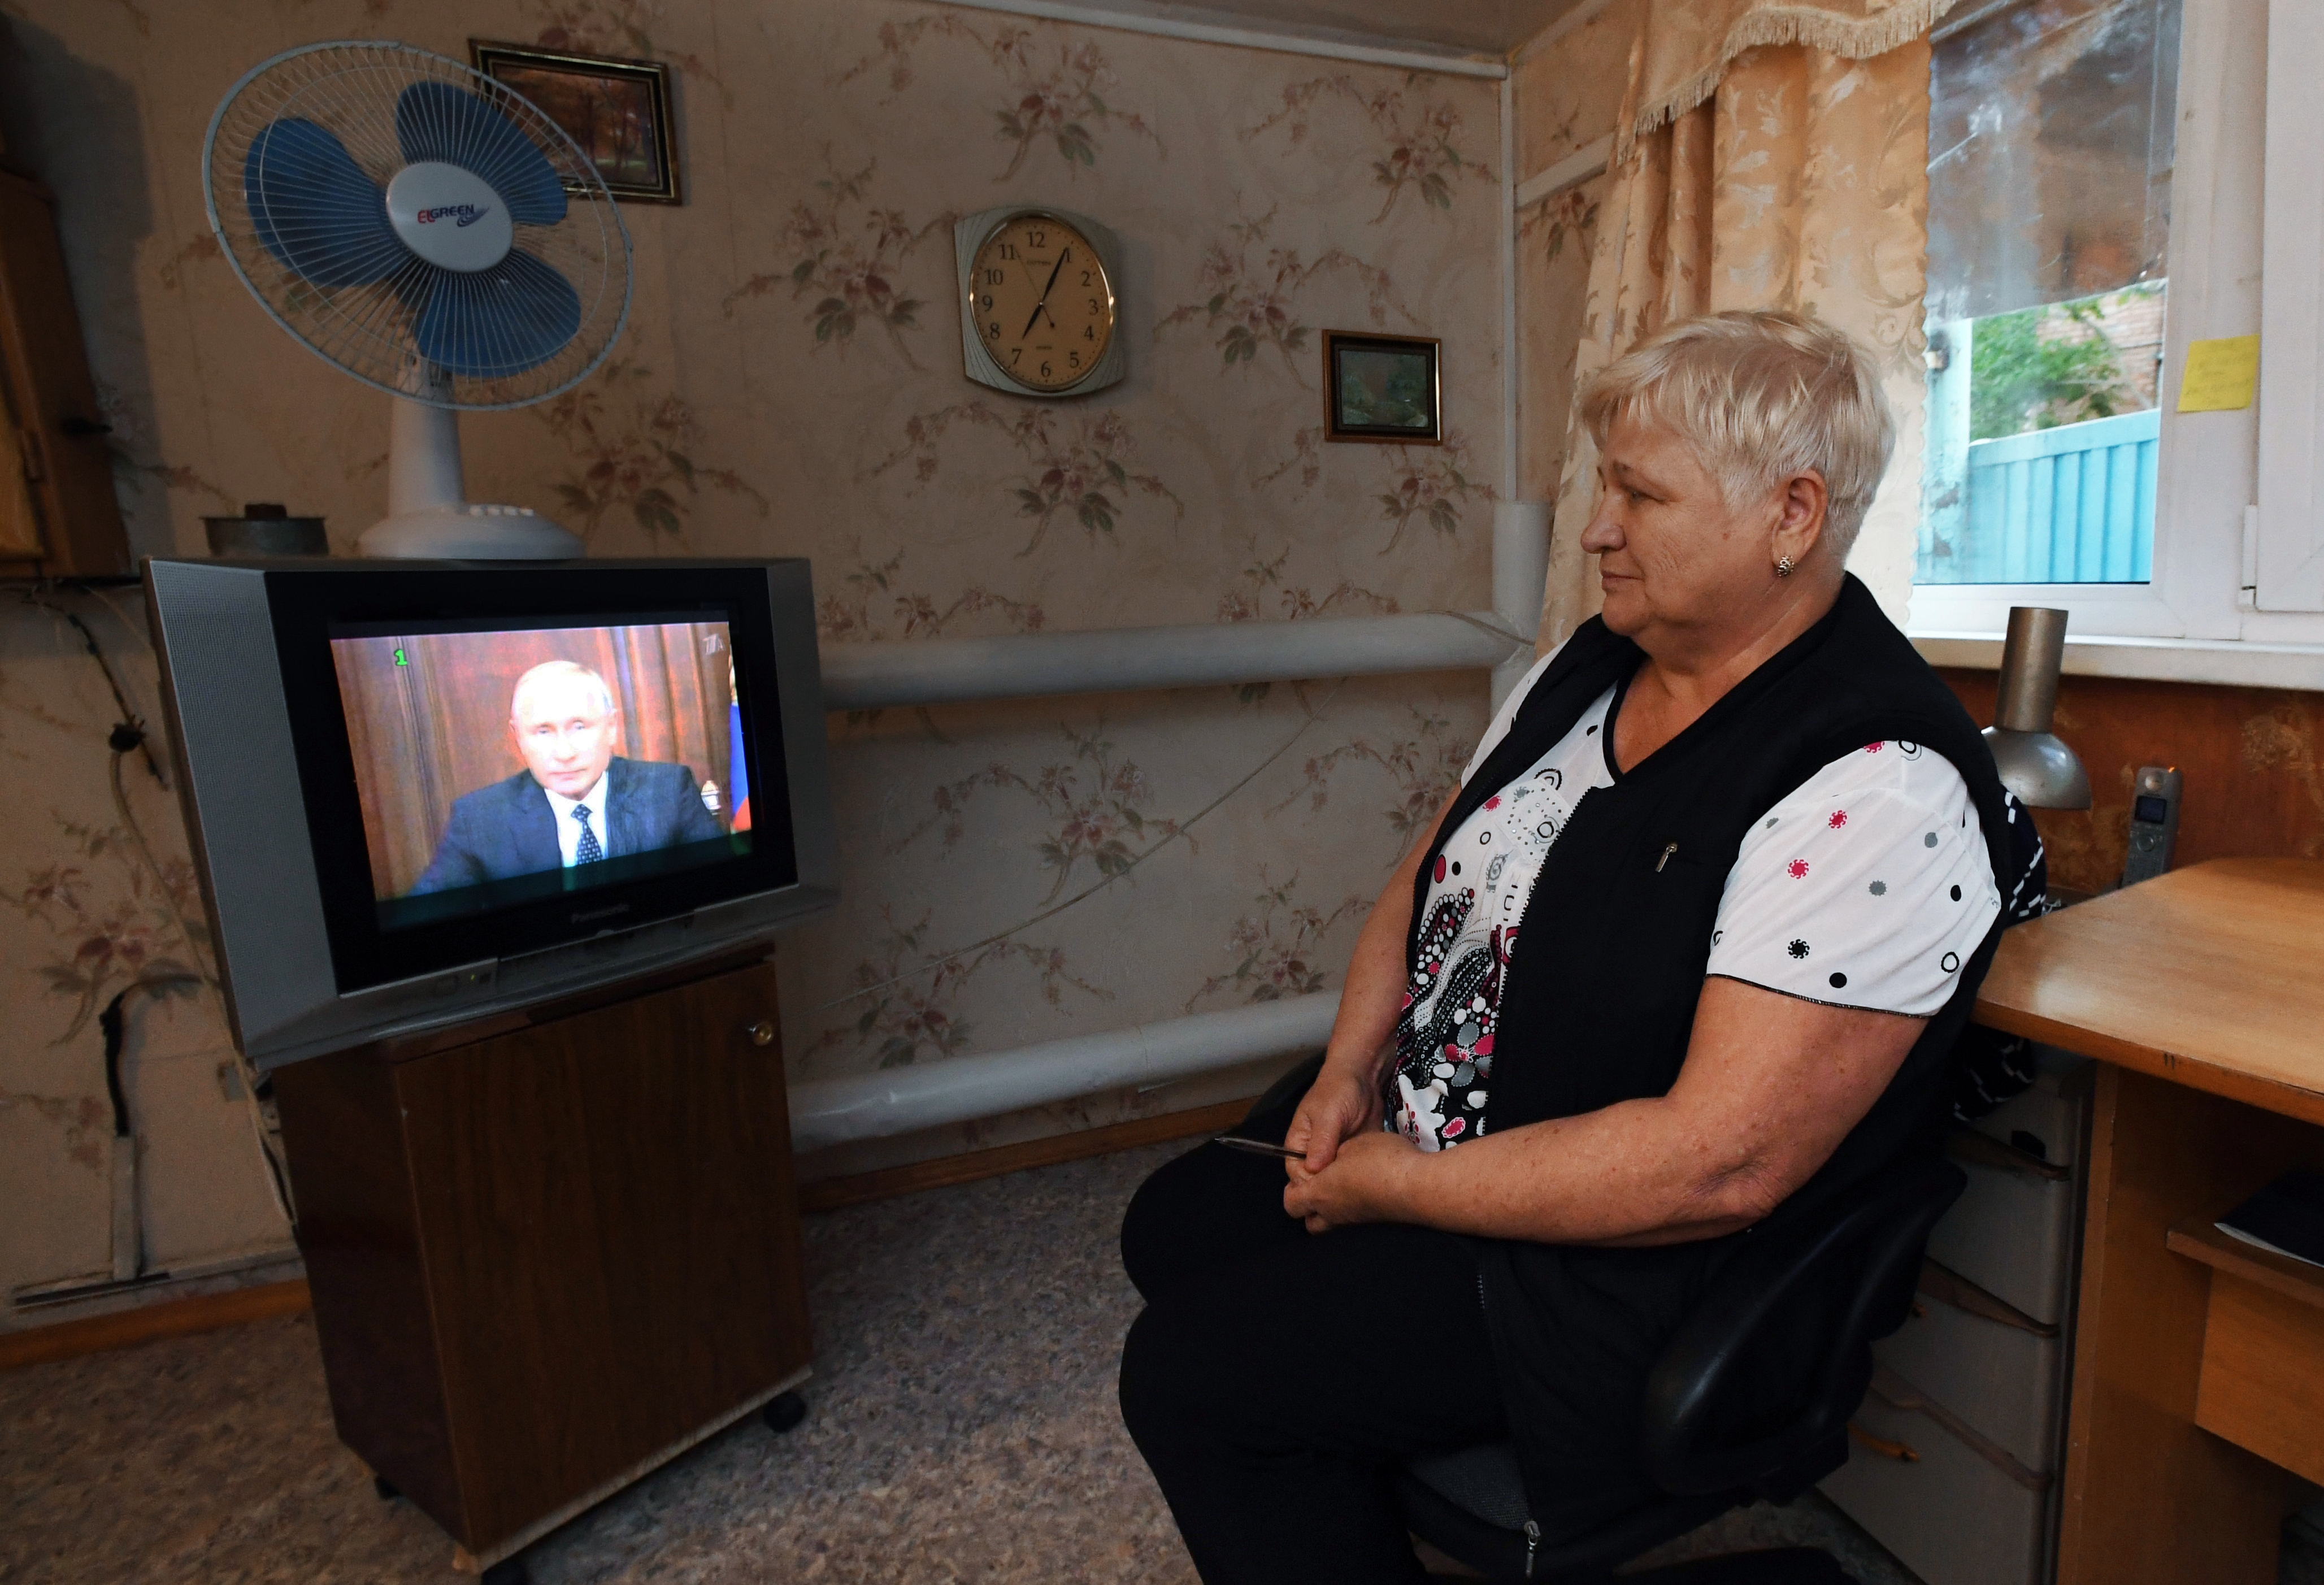 Новости про пенсионеров сегодня. Кабельное Телевидение для пенсионеров. Пенсионеры смотрят телевизор. Пенсионер у телевизора.